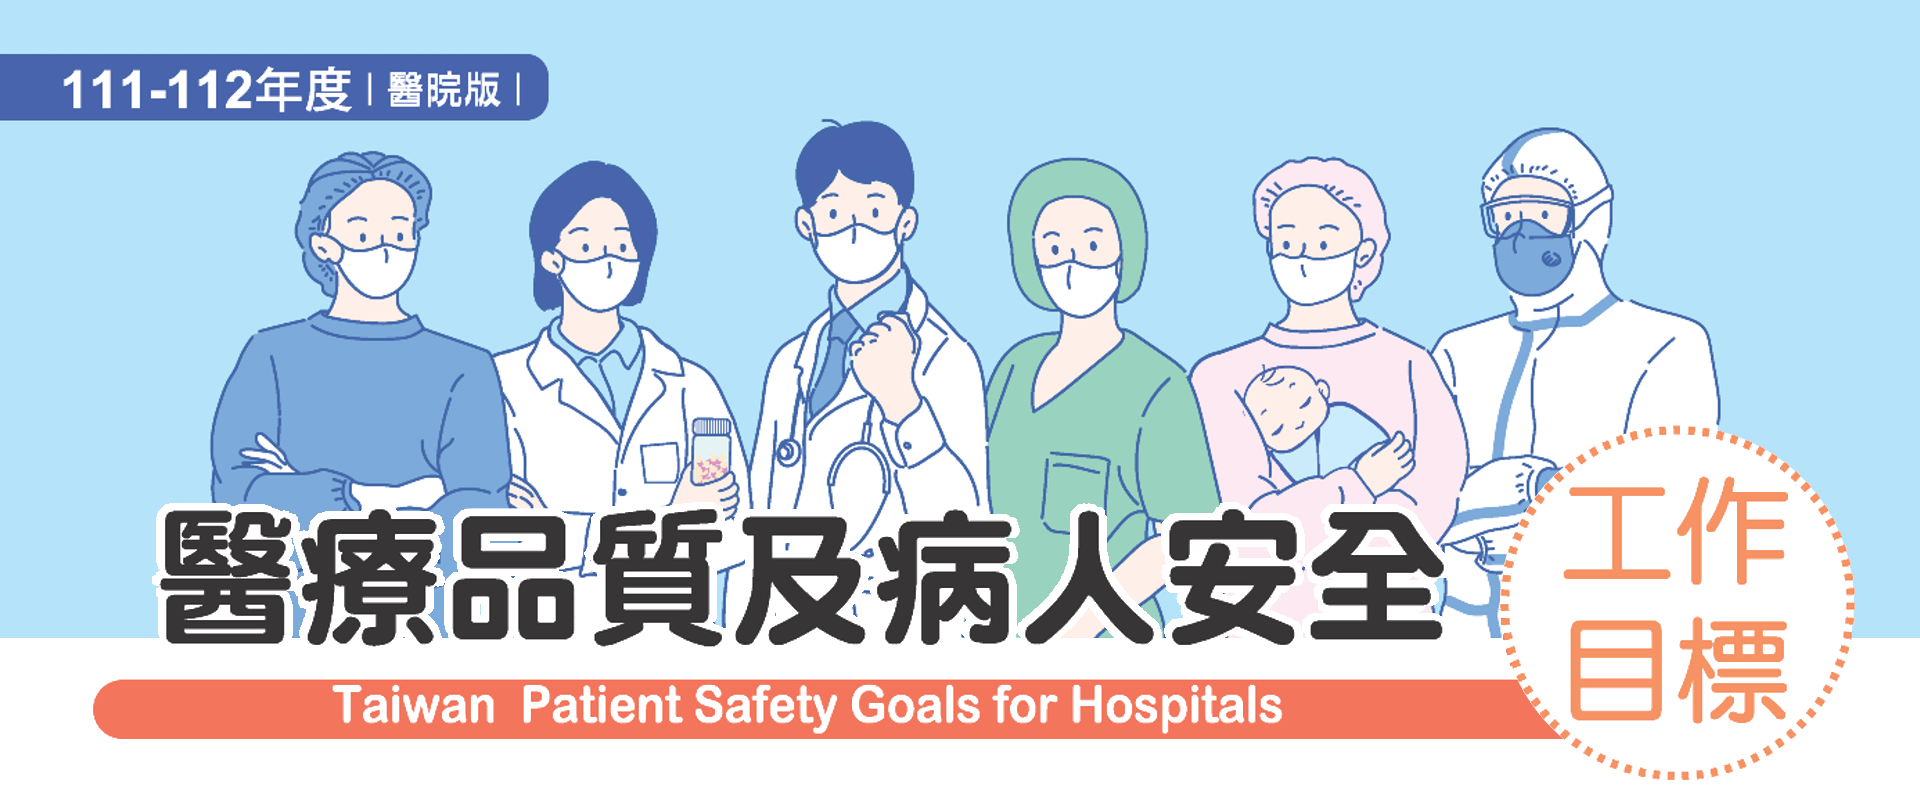 111-112年醫院病人安全年度目標